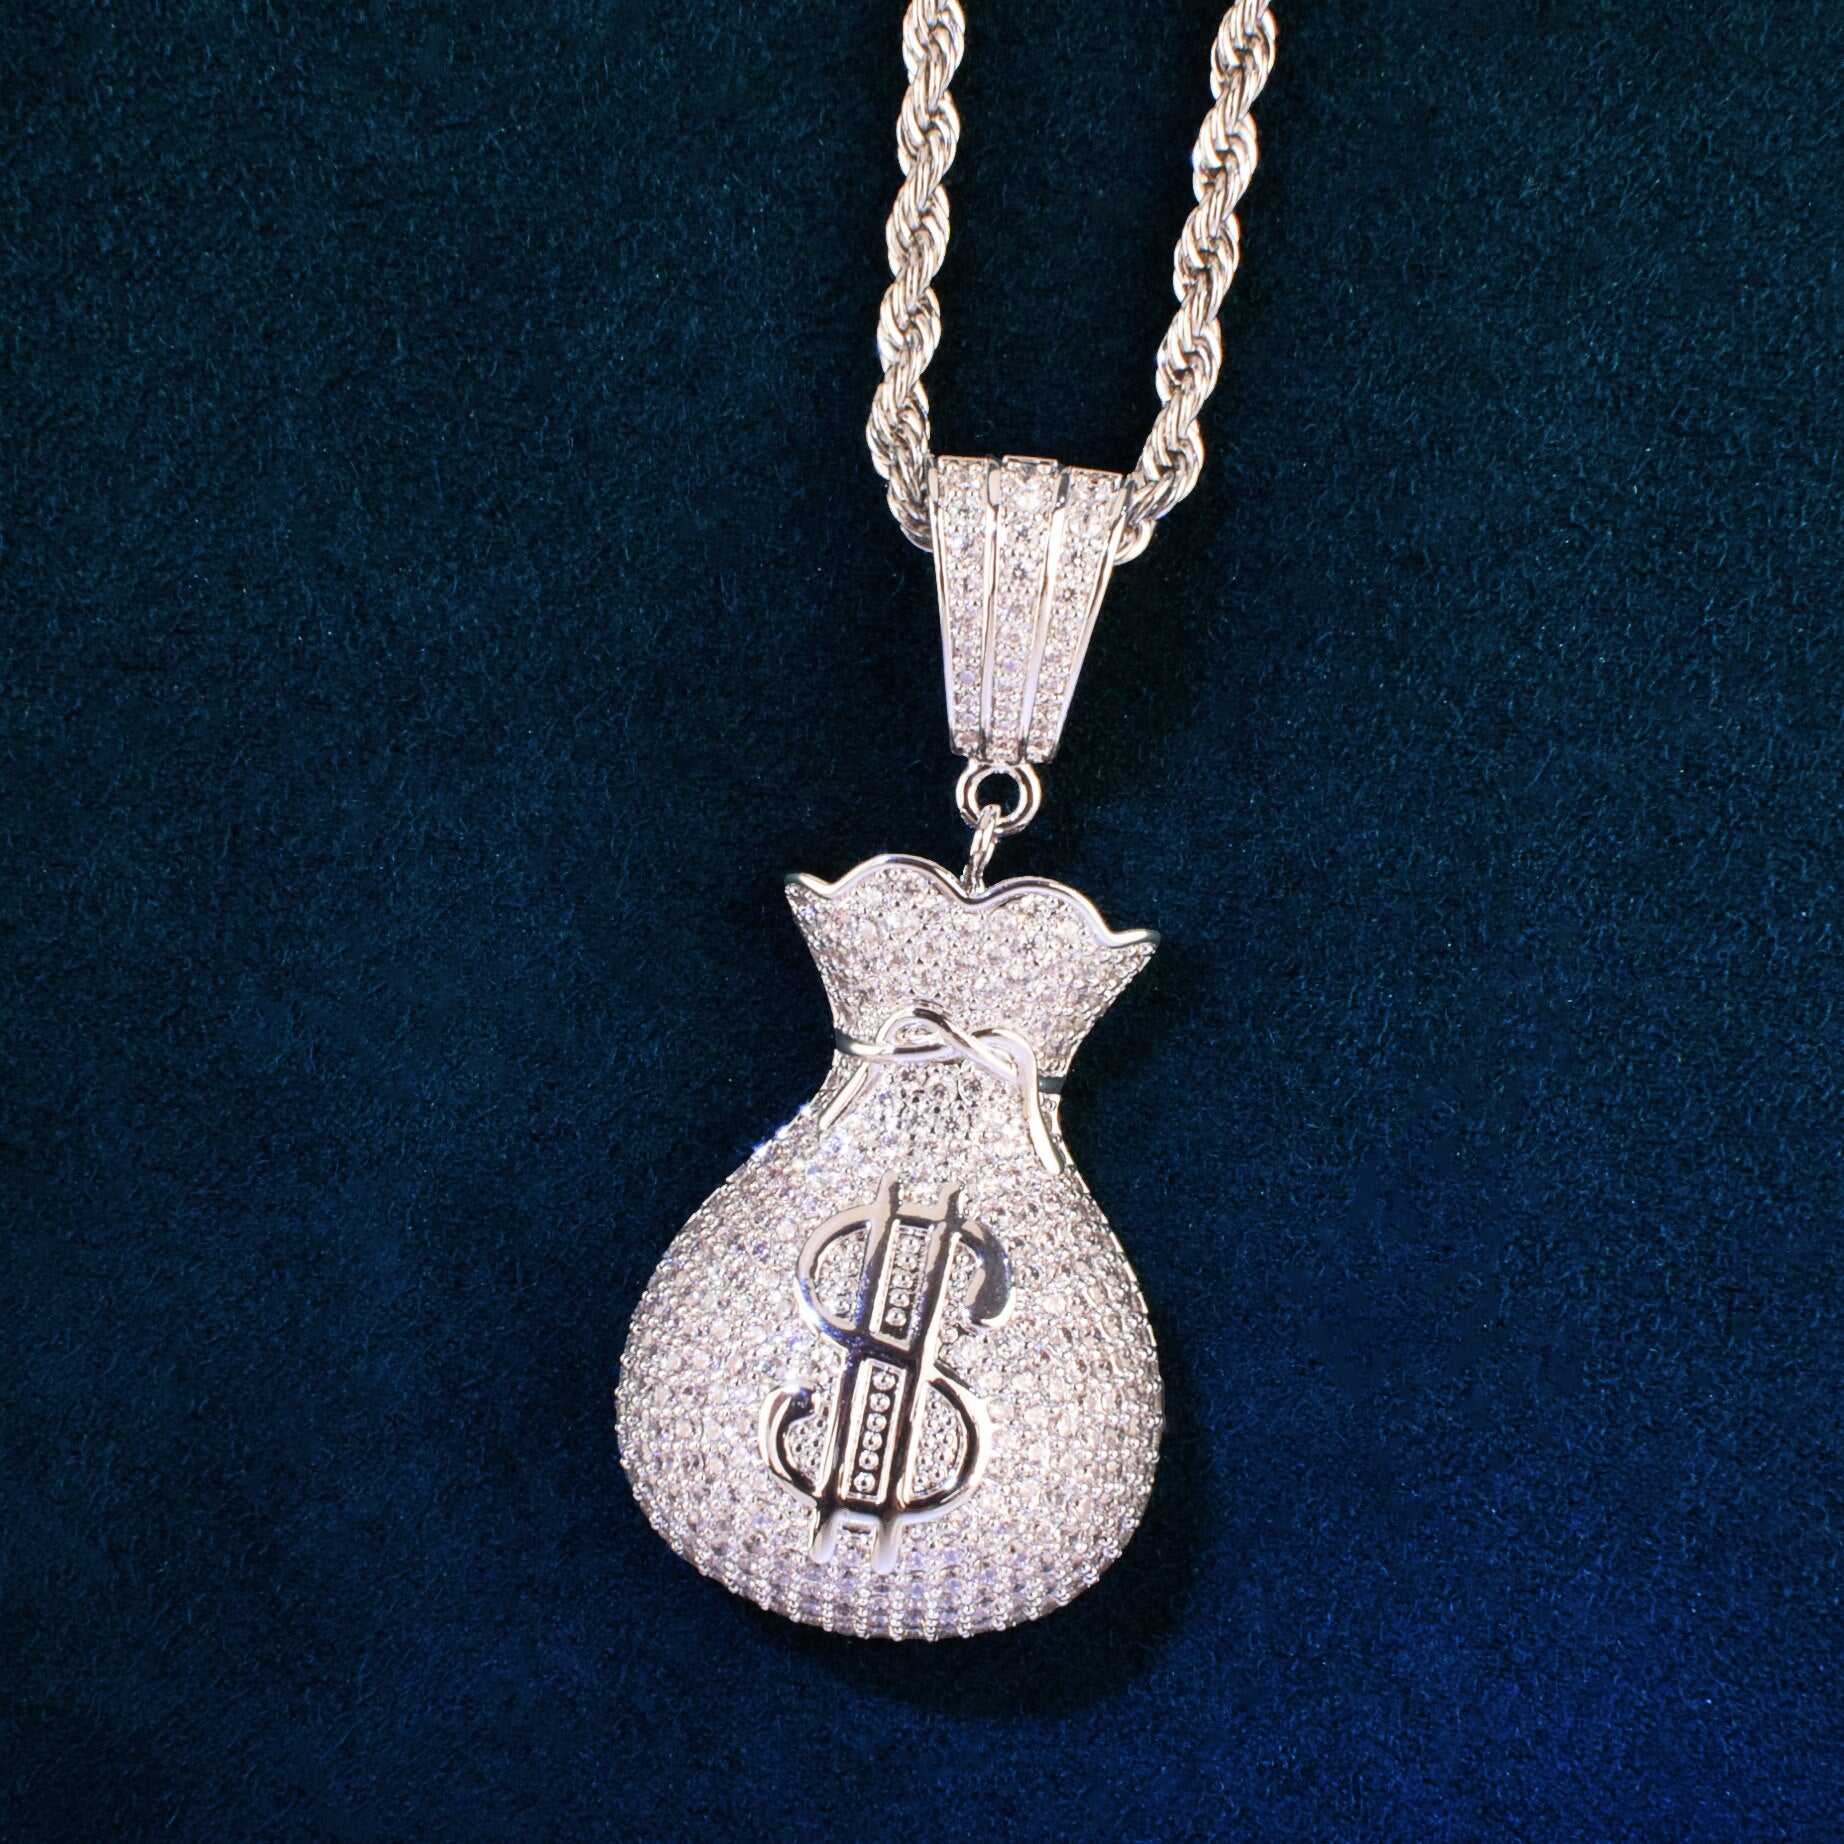 Money Bag Pendant | Money Bag Pendant Gold | Hip Hop Jewelry Pendants